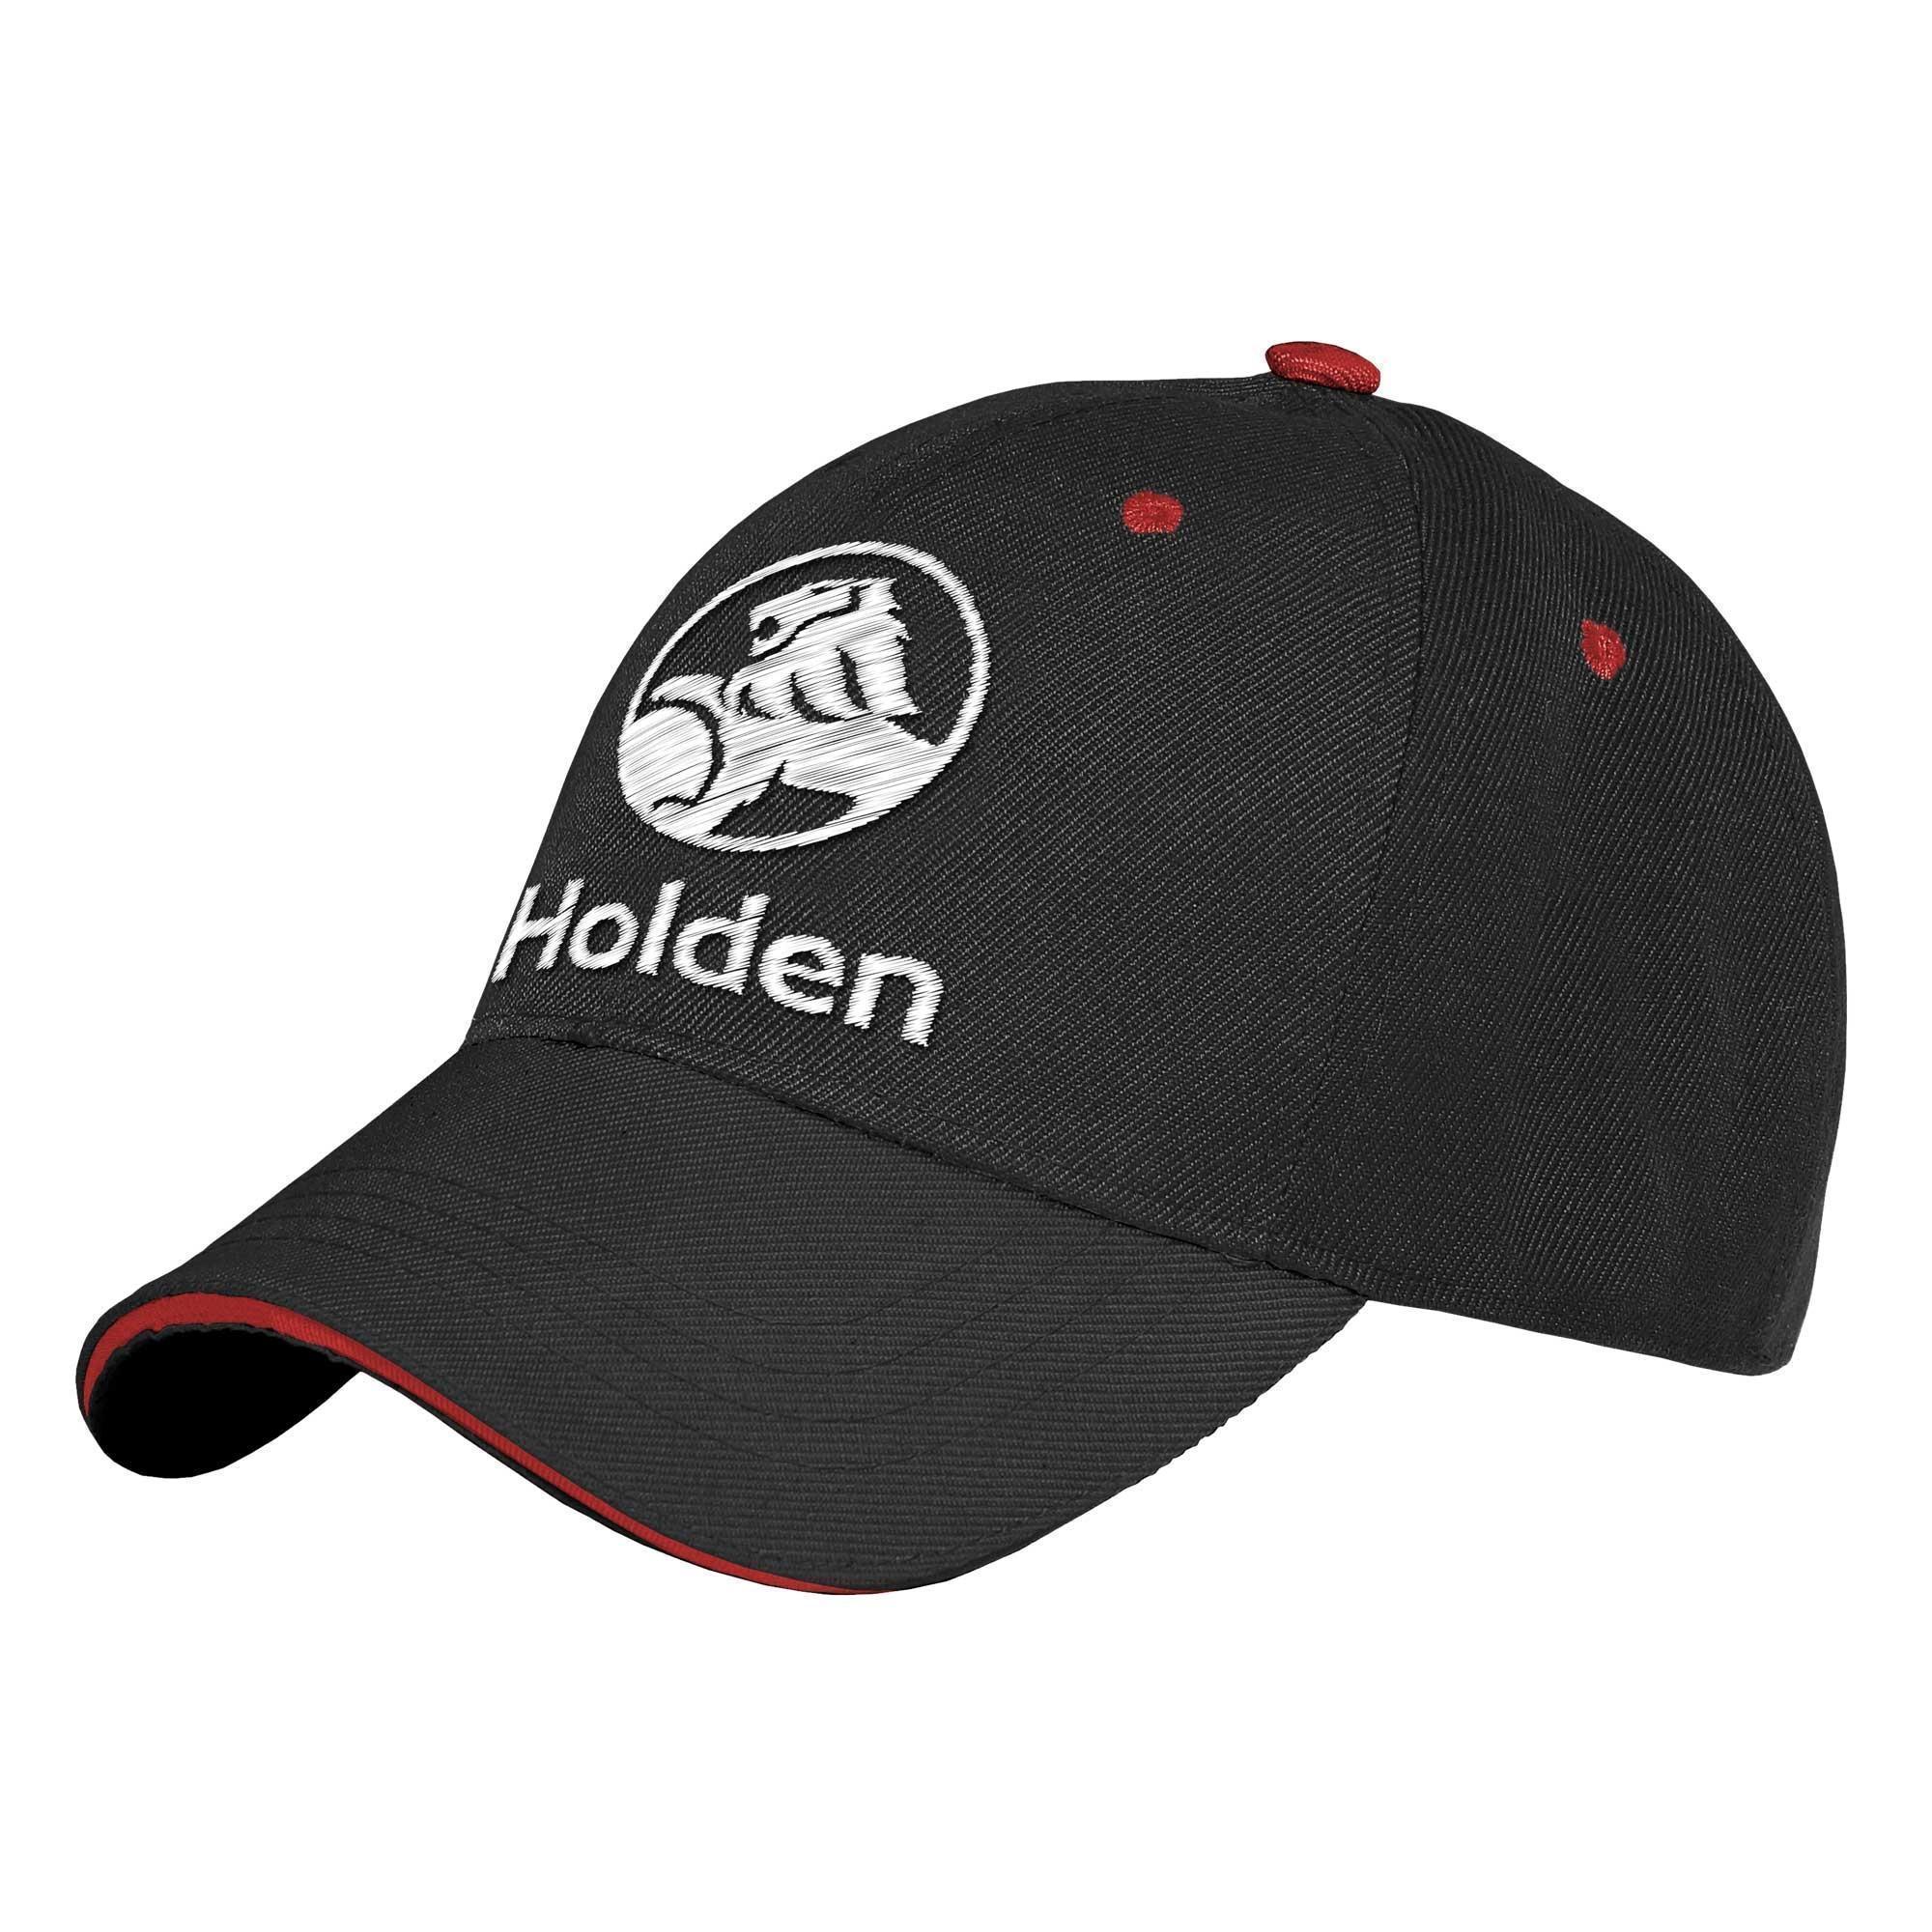 Holden Mens Adult Embroidered Core Logo Black Adjustable Snap Back Baseball Cap